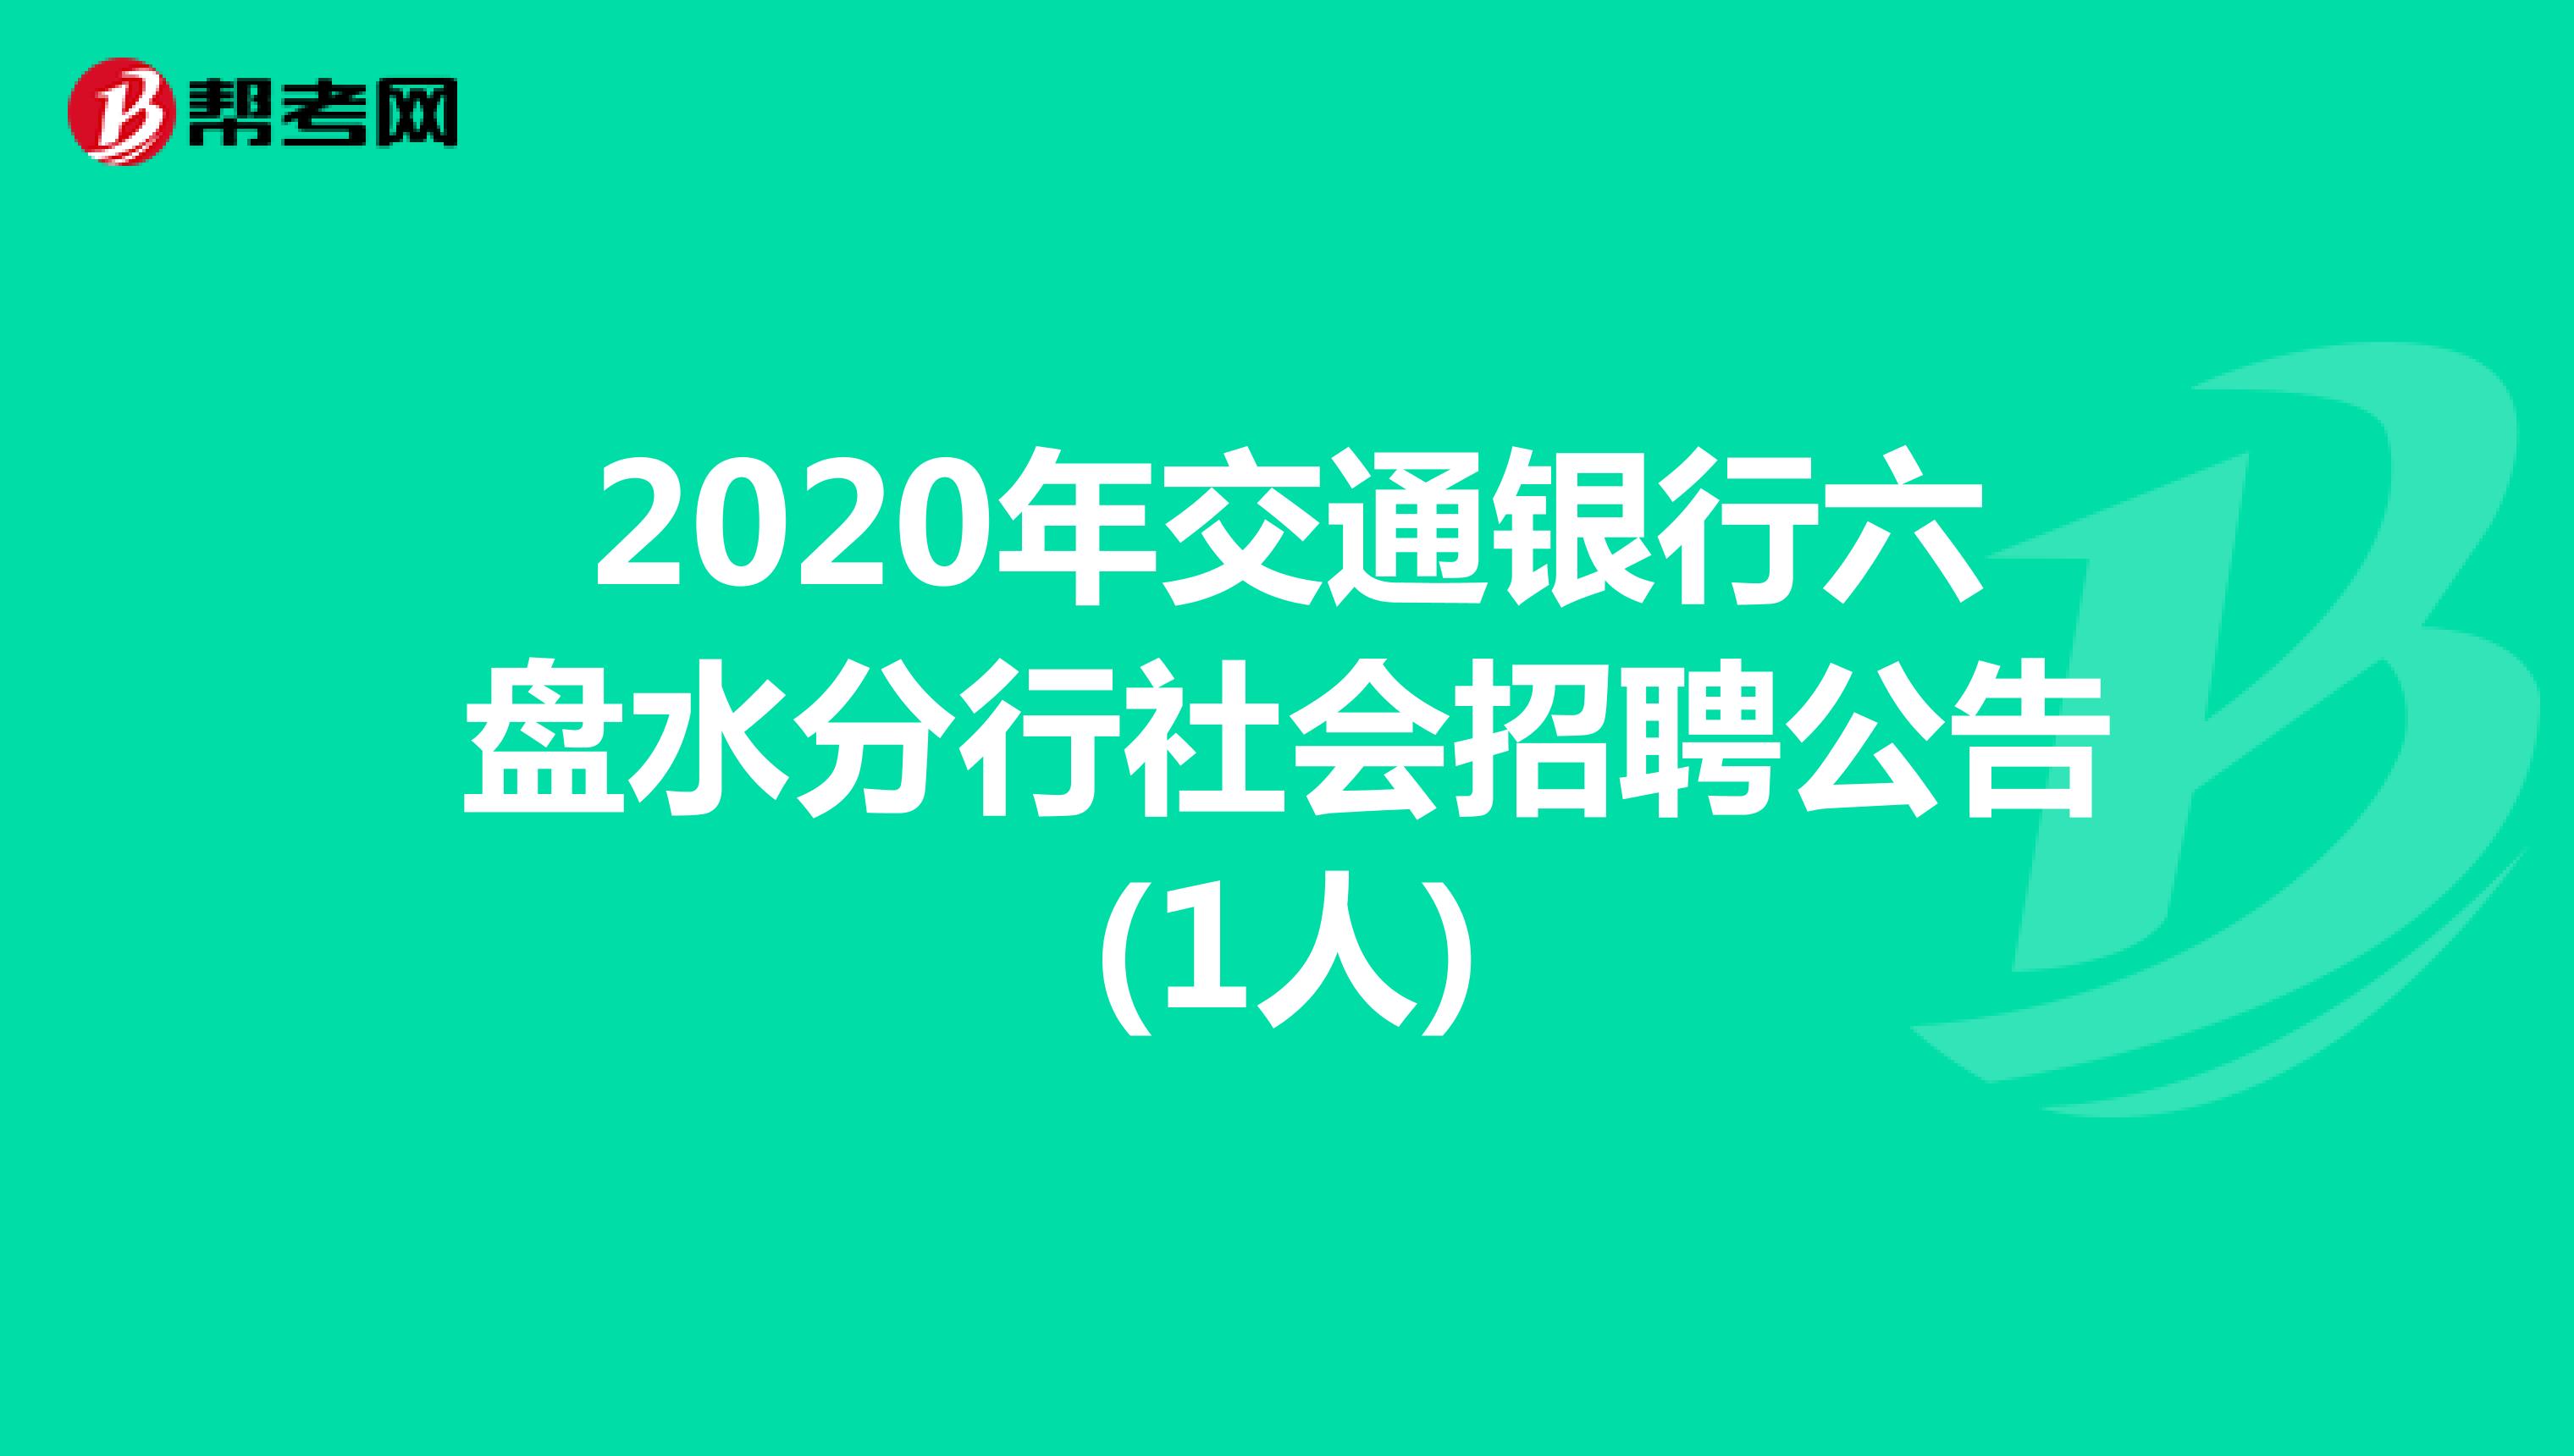 2020年交通银行六盘水分行社会招聘公告(1人)